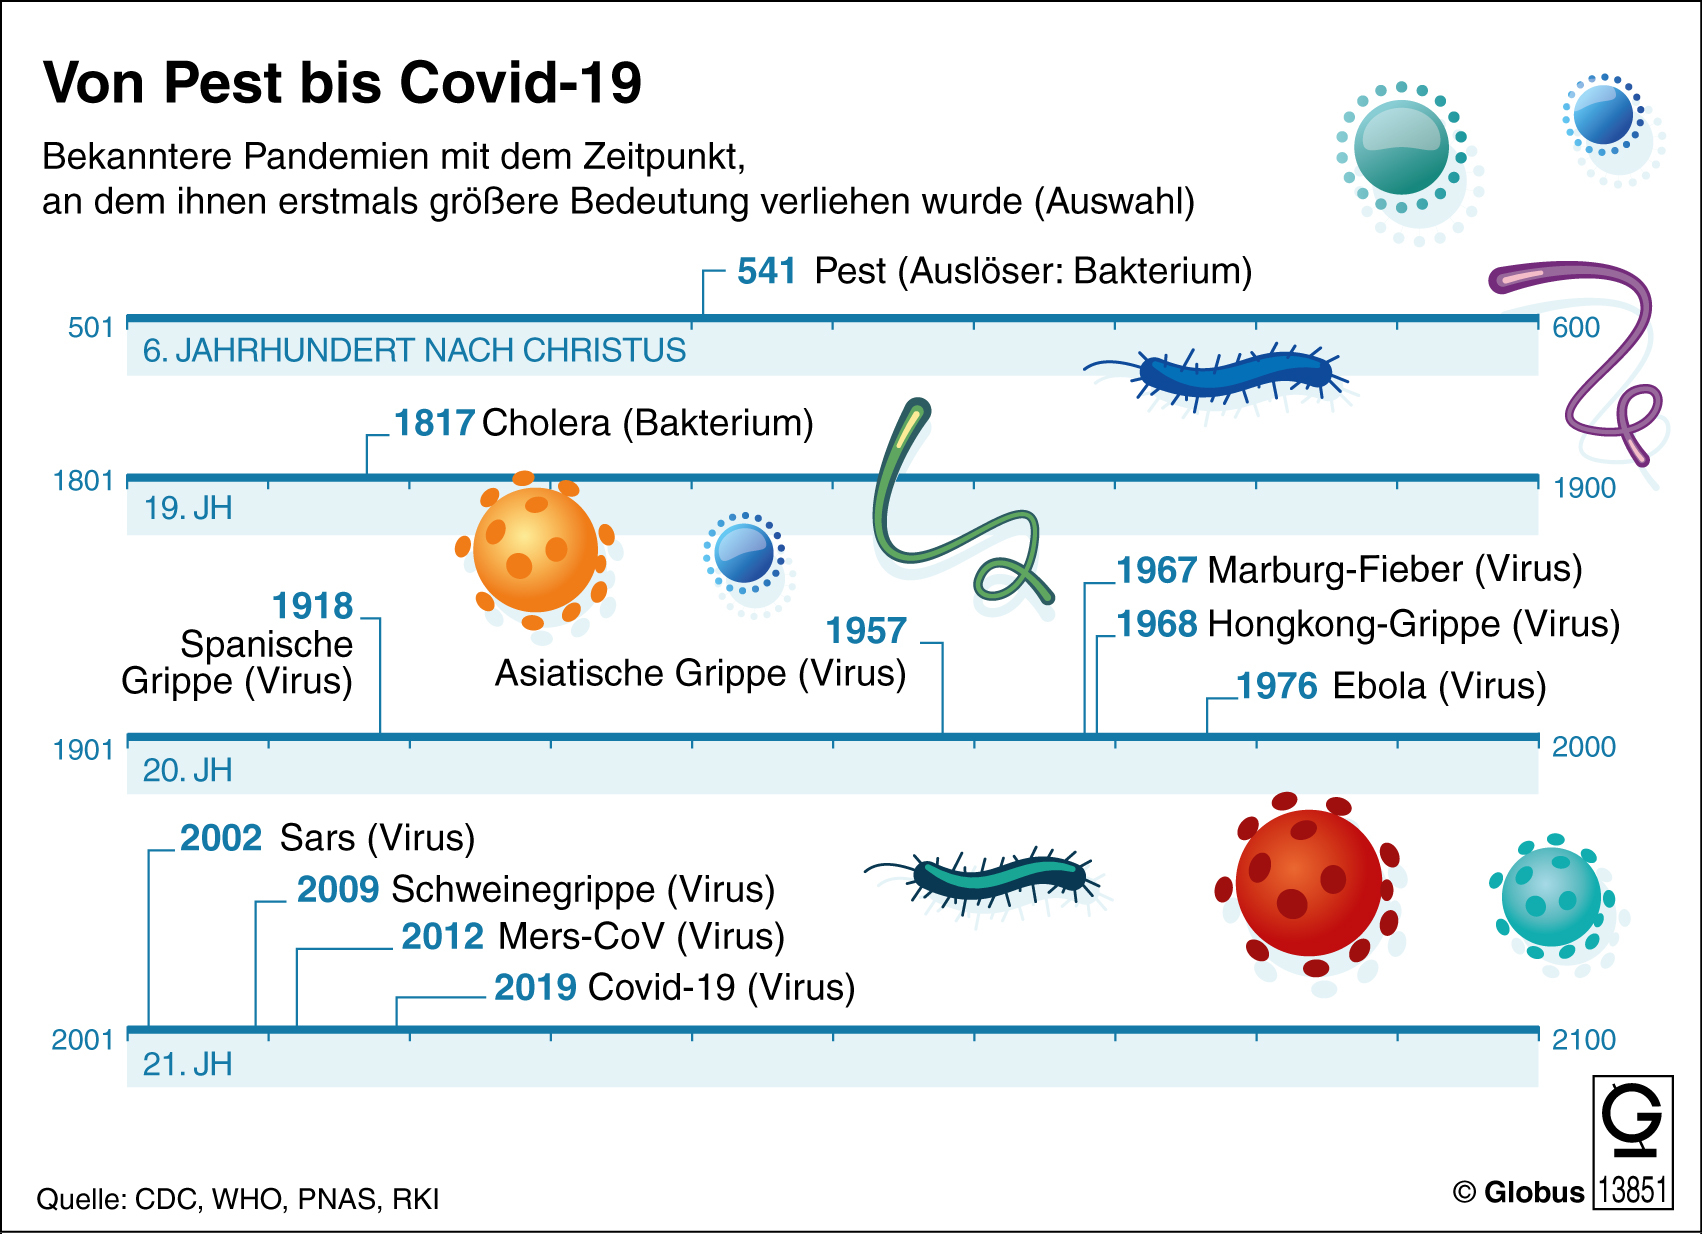 Von Pest zu Covid-19 | Bild: Bundesinstitut für Arzneimittel und Medizinprodukte